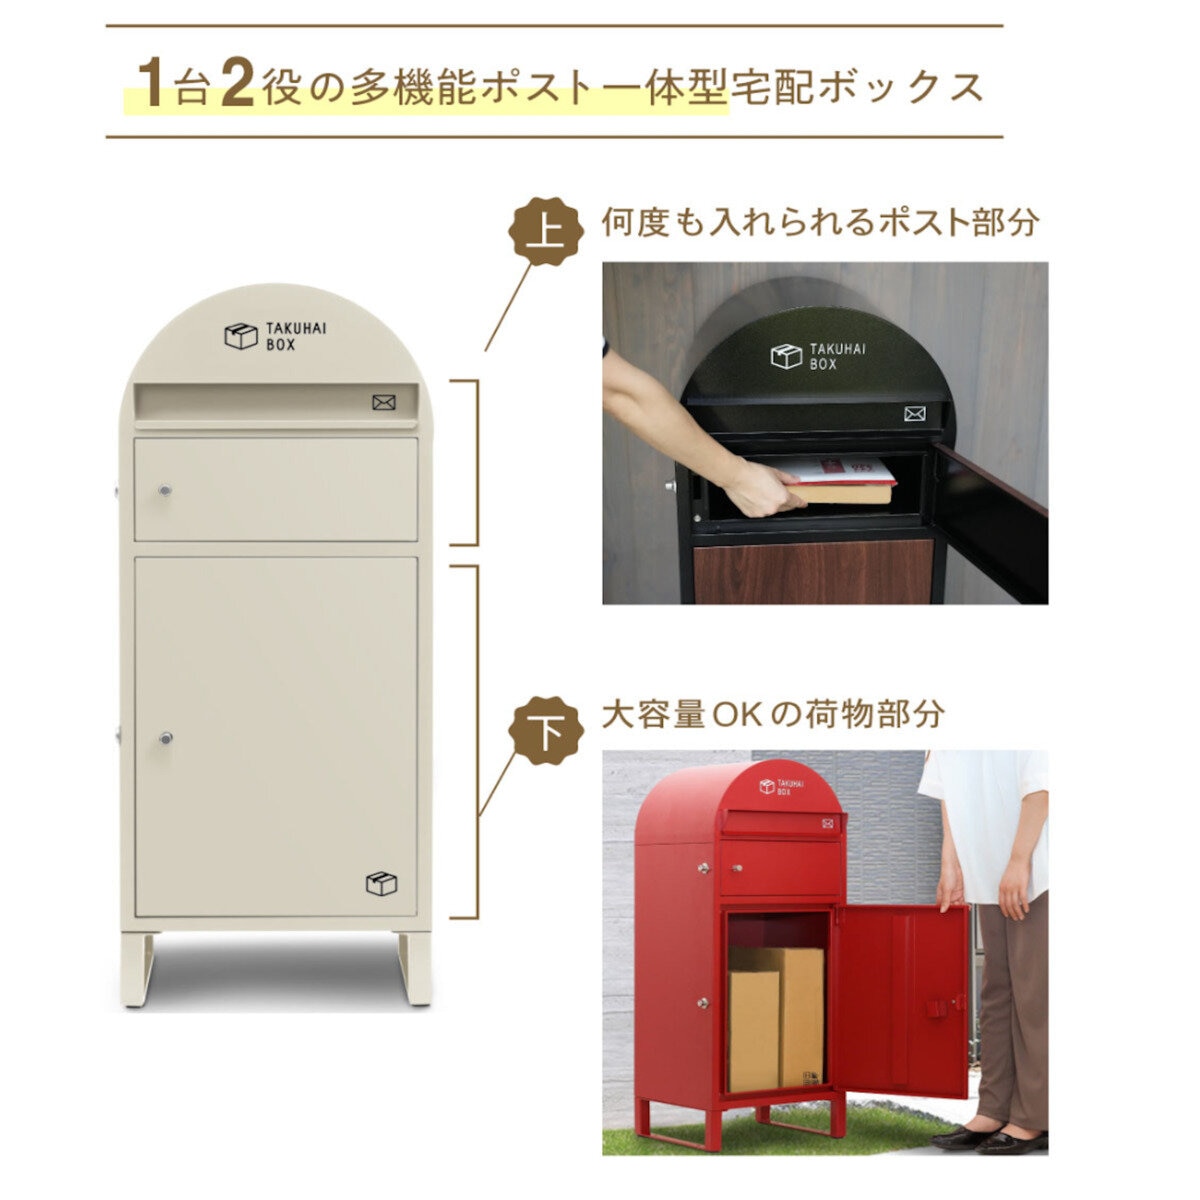 パイクスピーク ポスト一体型宅配ボックス 波月 P0169 チャコールブラック | Costco Japan